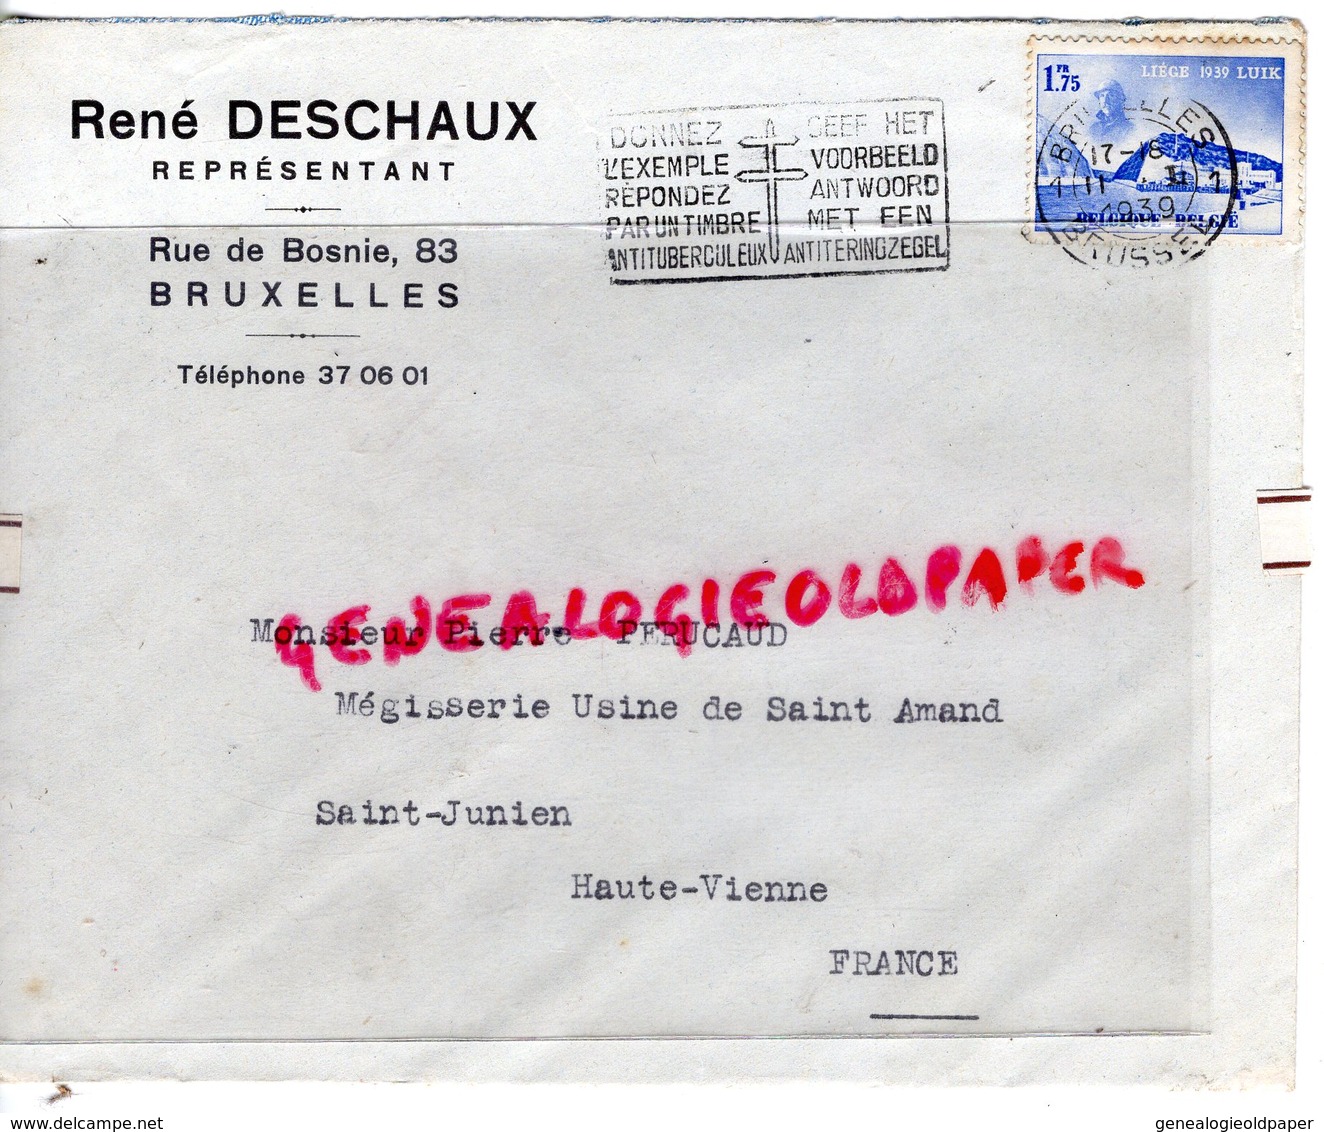 BELGIQUE-BRUXELLES- ENVELOPPE RENE DESCHAUX-REPRESENTANT 83 RUE DE BOSNIE-PIERRE PERUCAUD MEGISSERIE SAINT JUNIEN-1939 - Petits Métiers